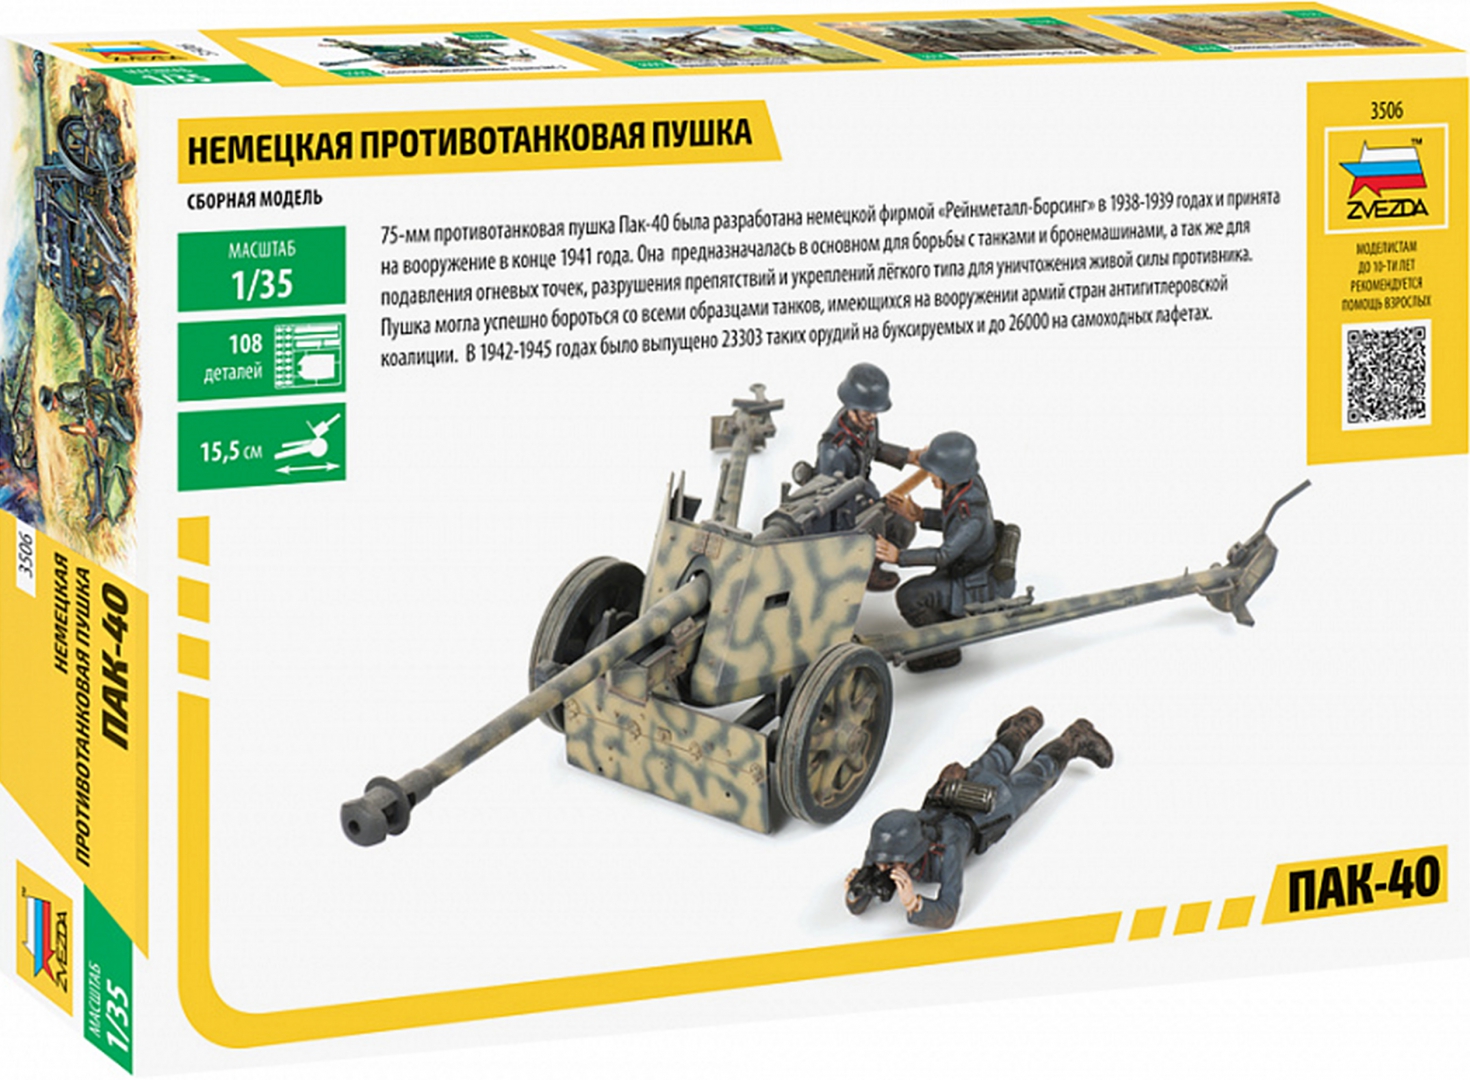 Иллюстрация 1 из 2 для Сборная модель "Немецкая противотанковая пушка ПАК-40" (3506) | Лабиринт - игрушки. Источник: Лабиринт